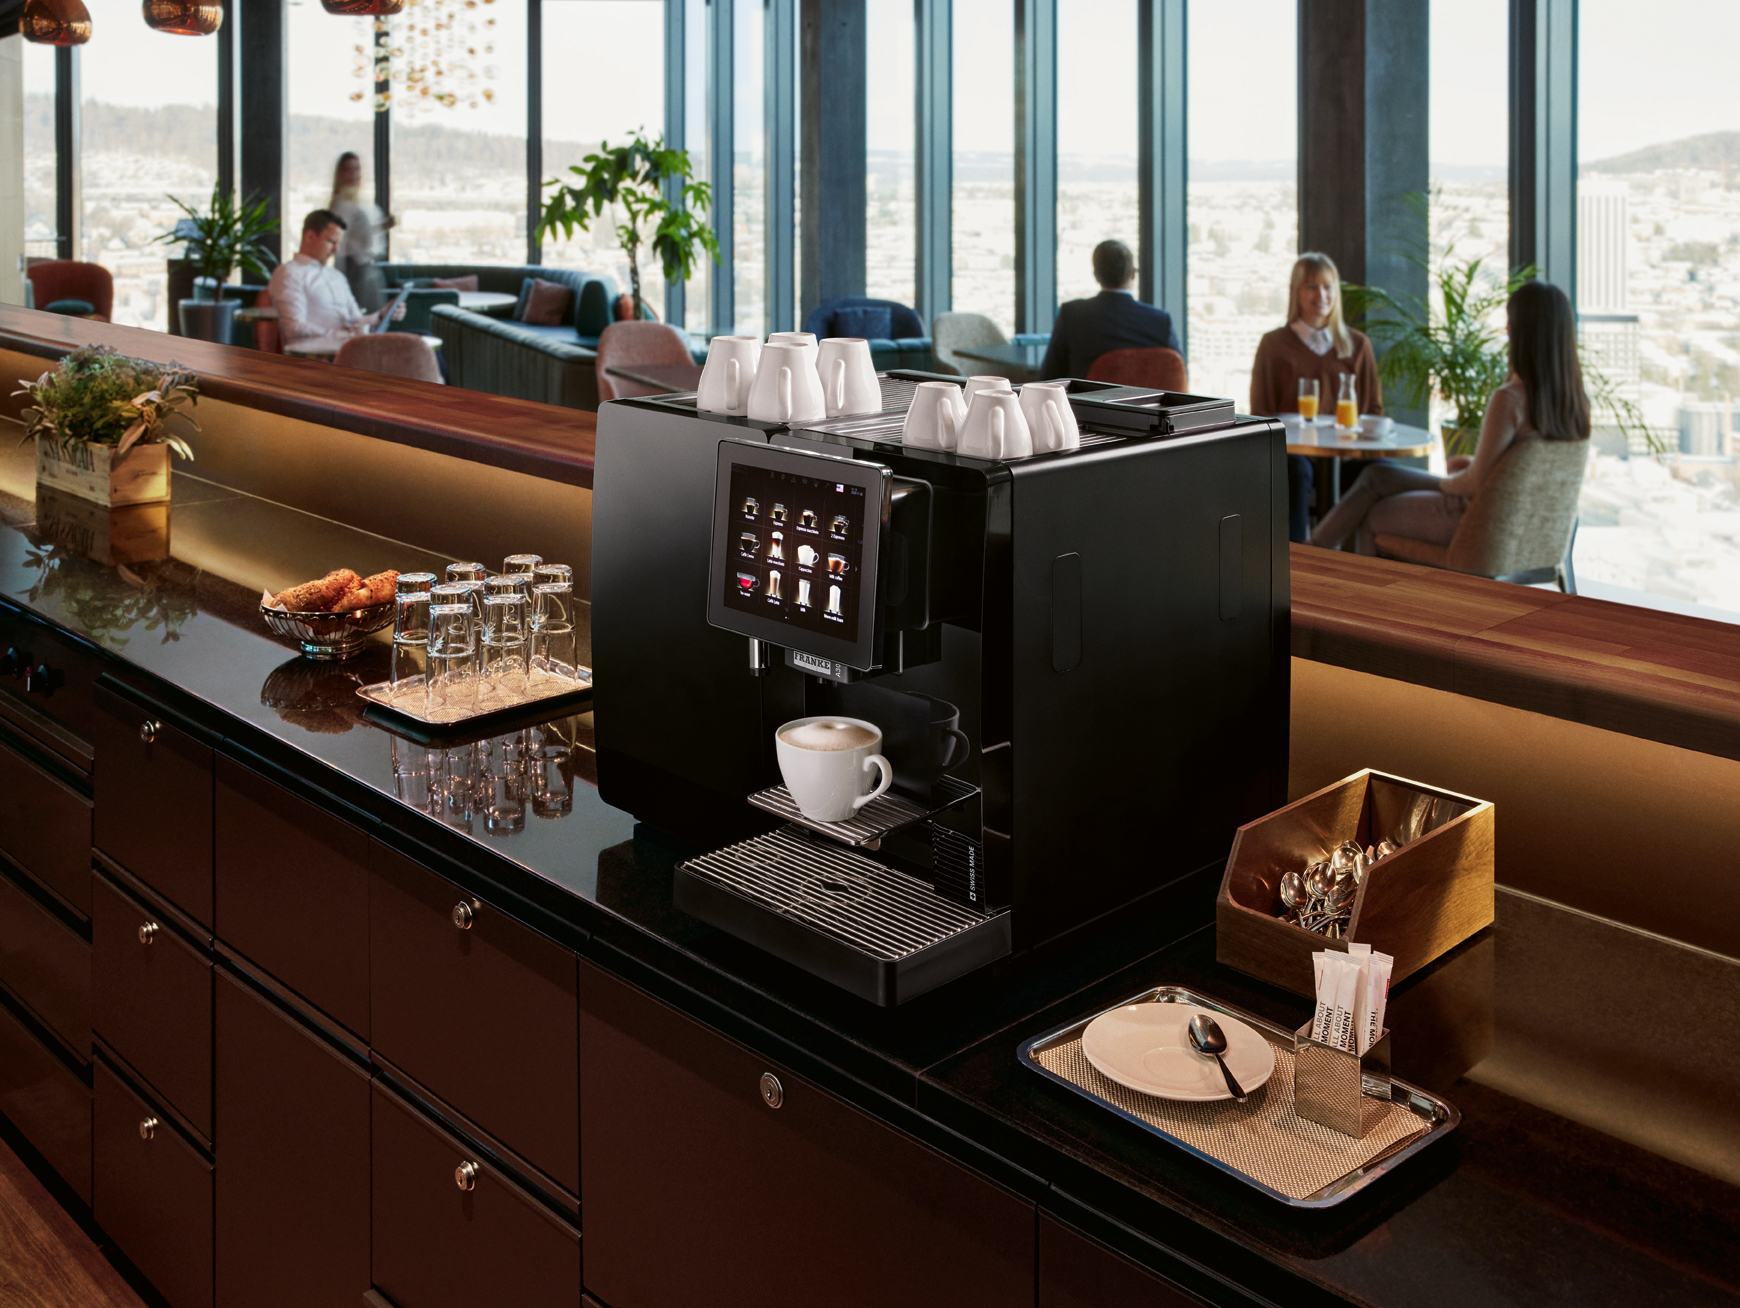 ダイオーズのオフィスコーヒーとは? サービスの特徴やコーヒーマシンを紹介